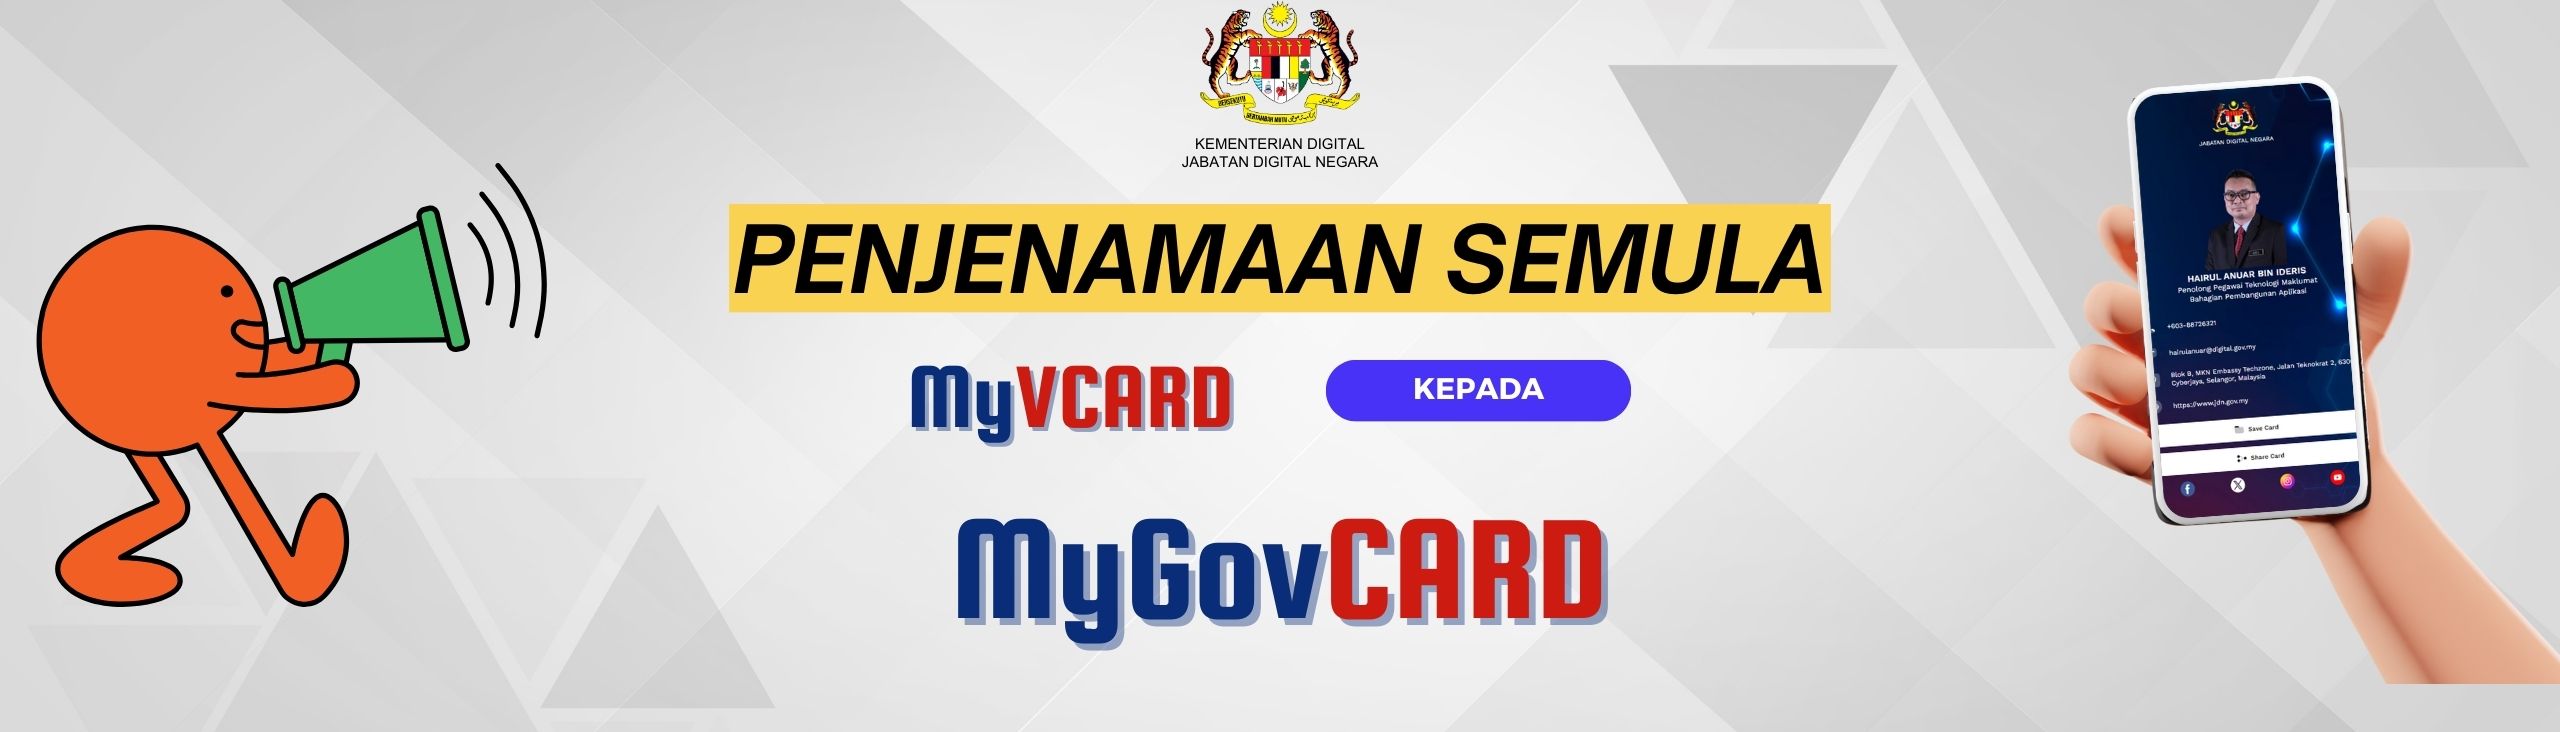 Penjenamaan Semula ke MyGovCard